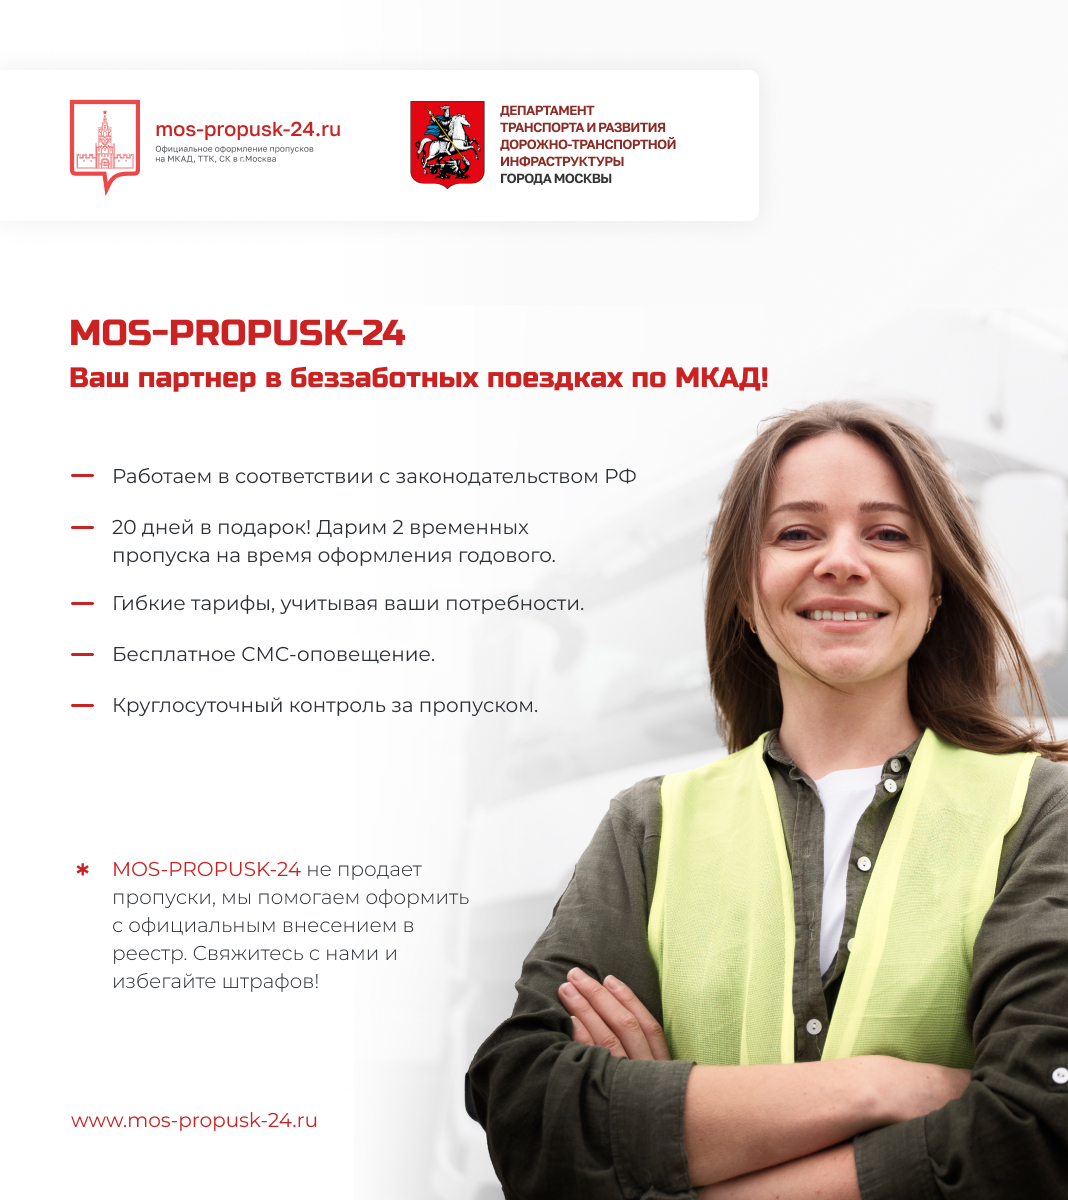 МОС-ПРОПУСК-24 – ваш партнер в беззаботных поездках по МКАД!